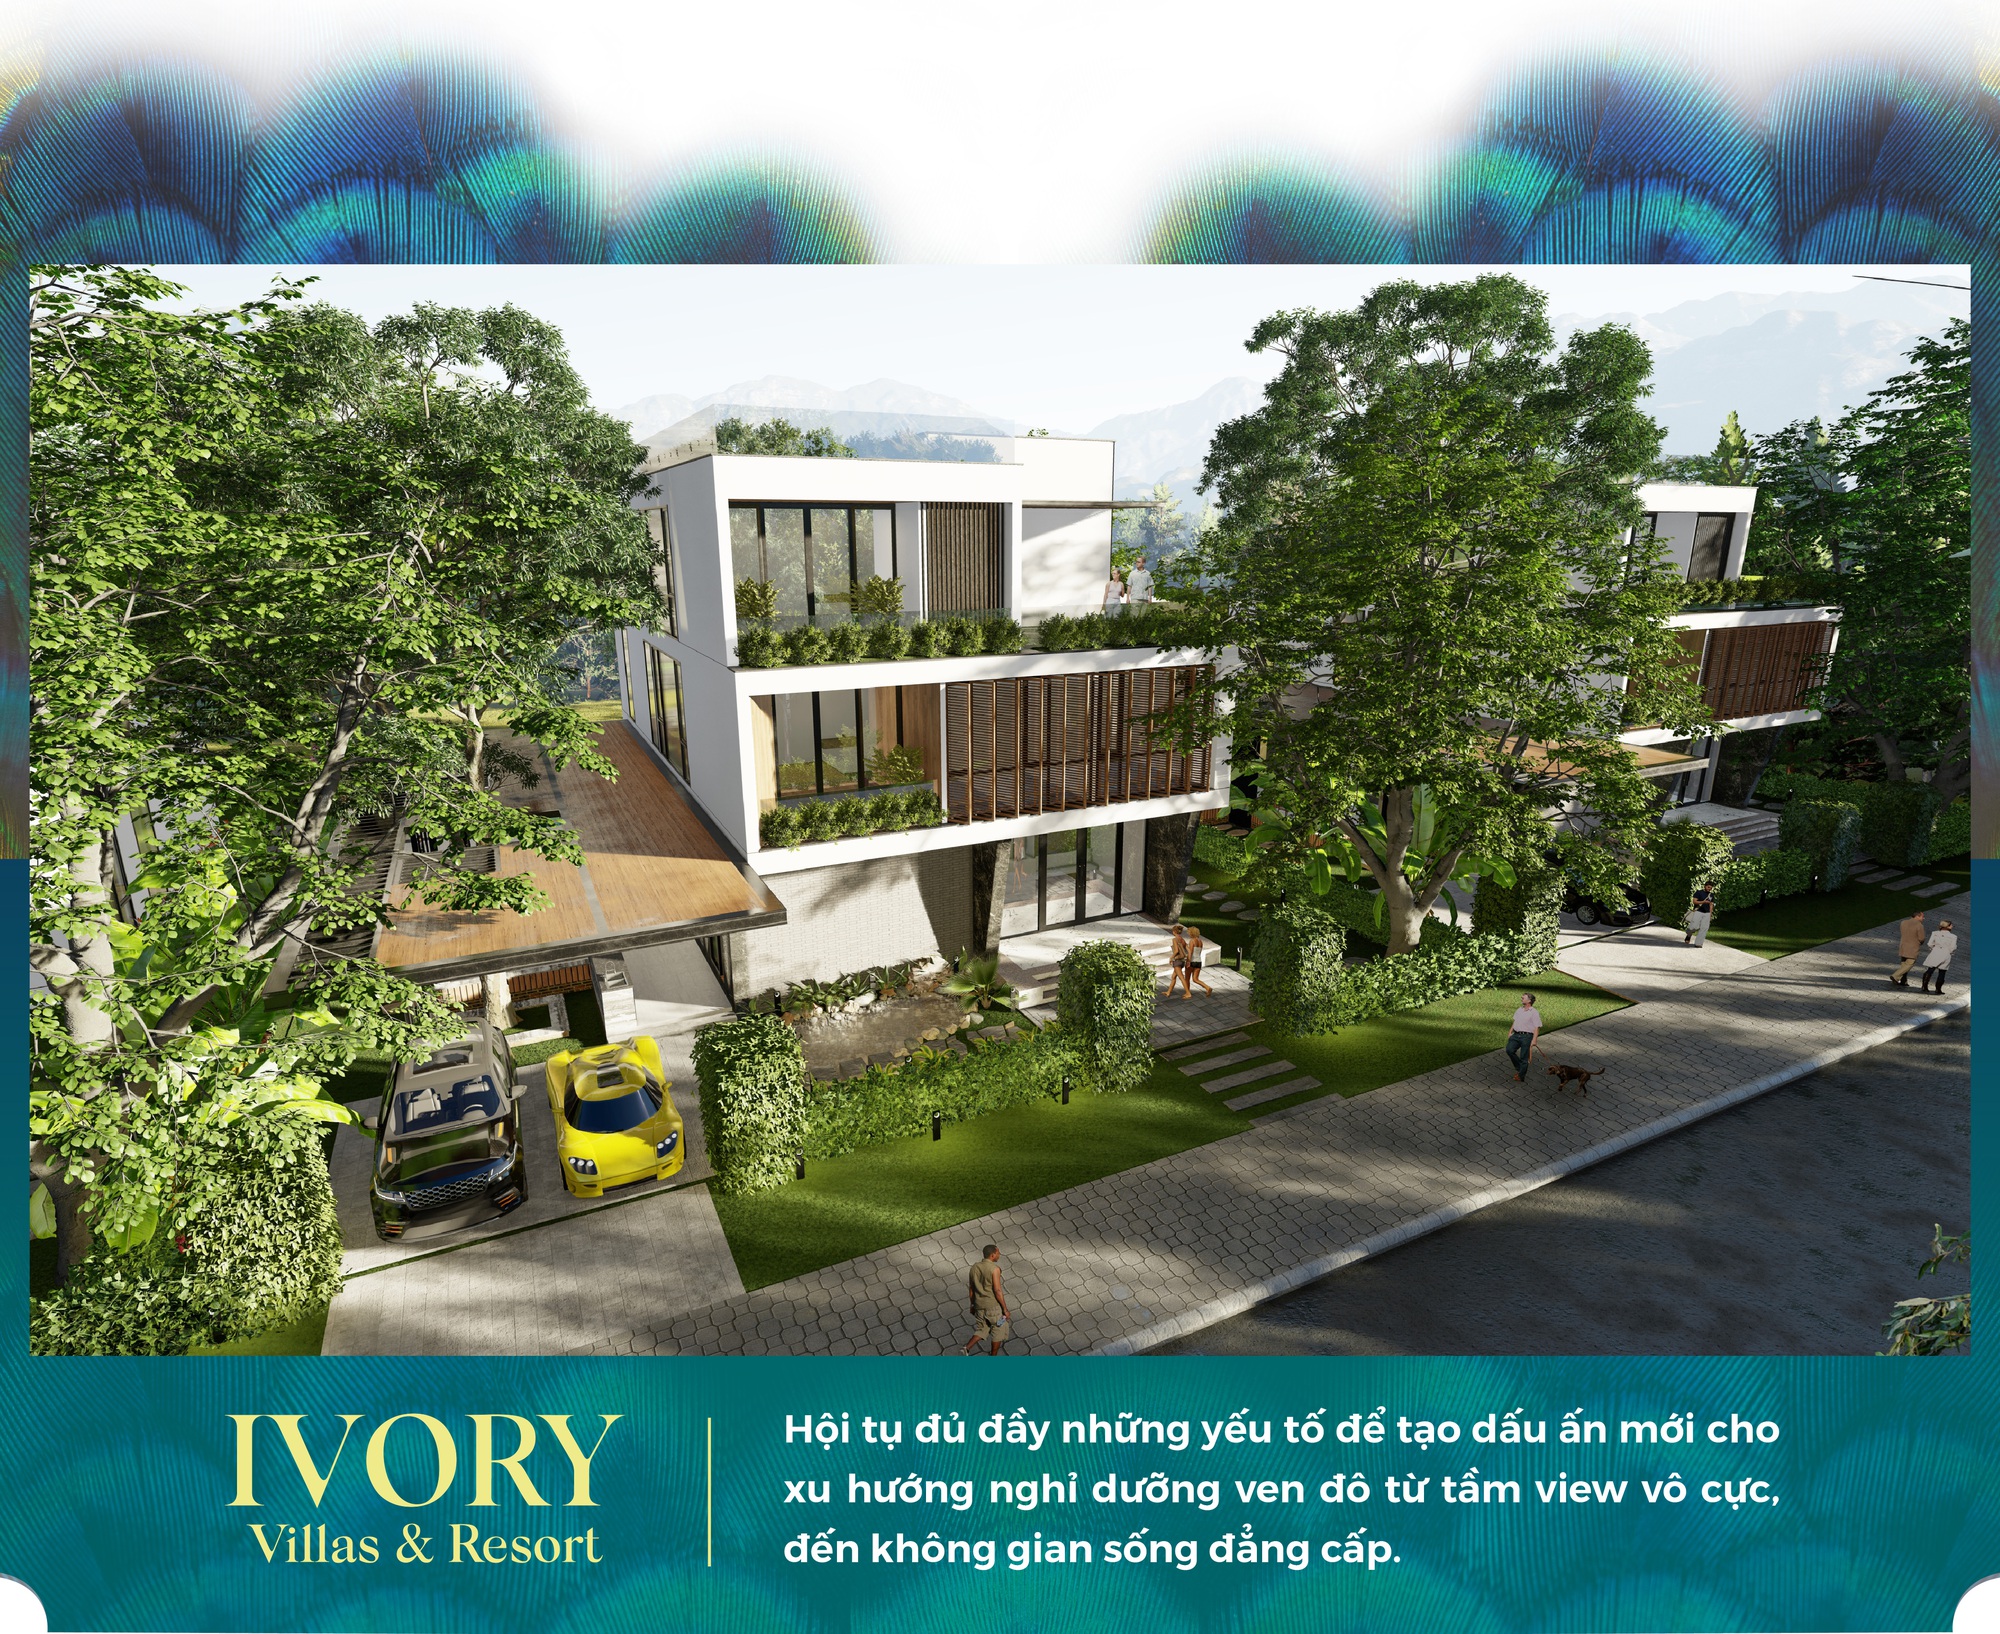 Ivory Villas & Resort: Dấu ấn mới trong xu hướng nghỉ dưỡng ven đô - Ảnh 2.